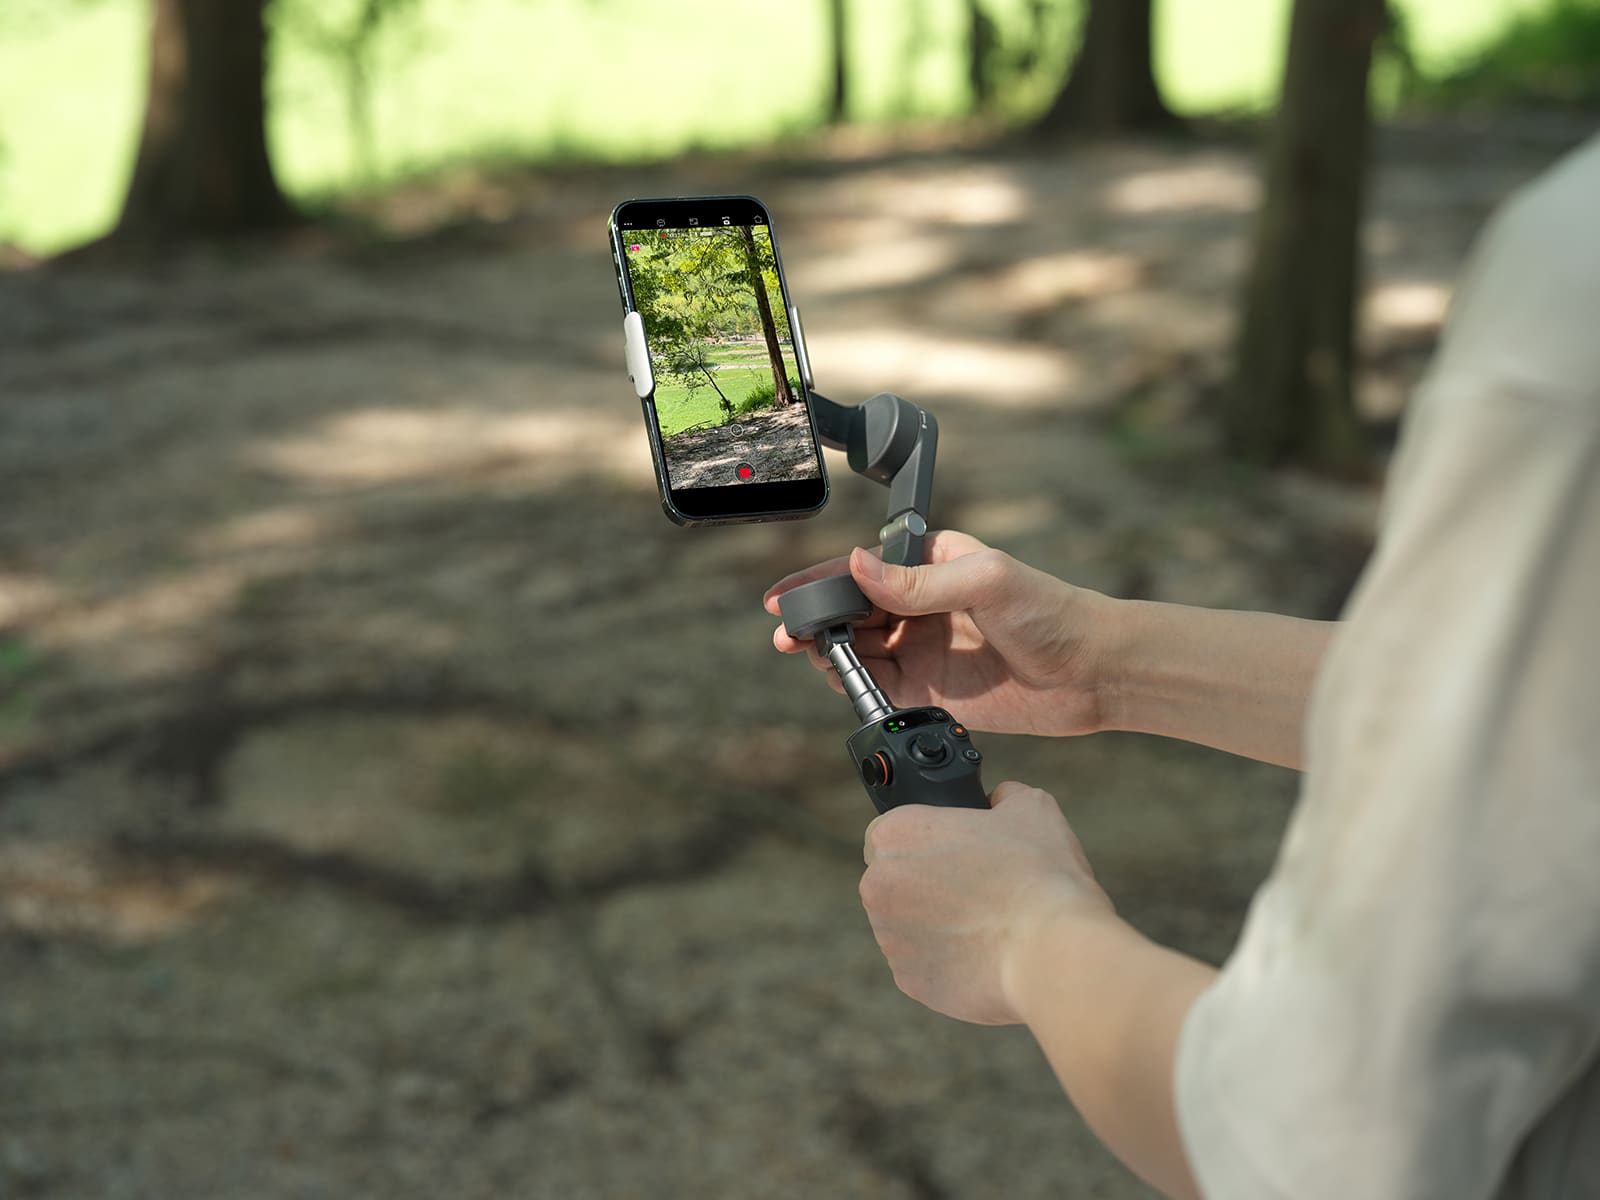 DJI ra mắt gimbal cho smartphone Osmo Mobile 6 với ActiveTrack 5.0, vòng điều khiển và các nâng cấp khác